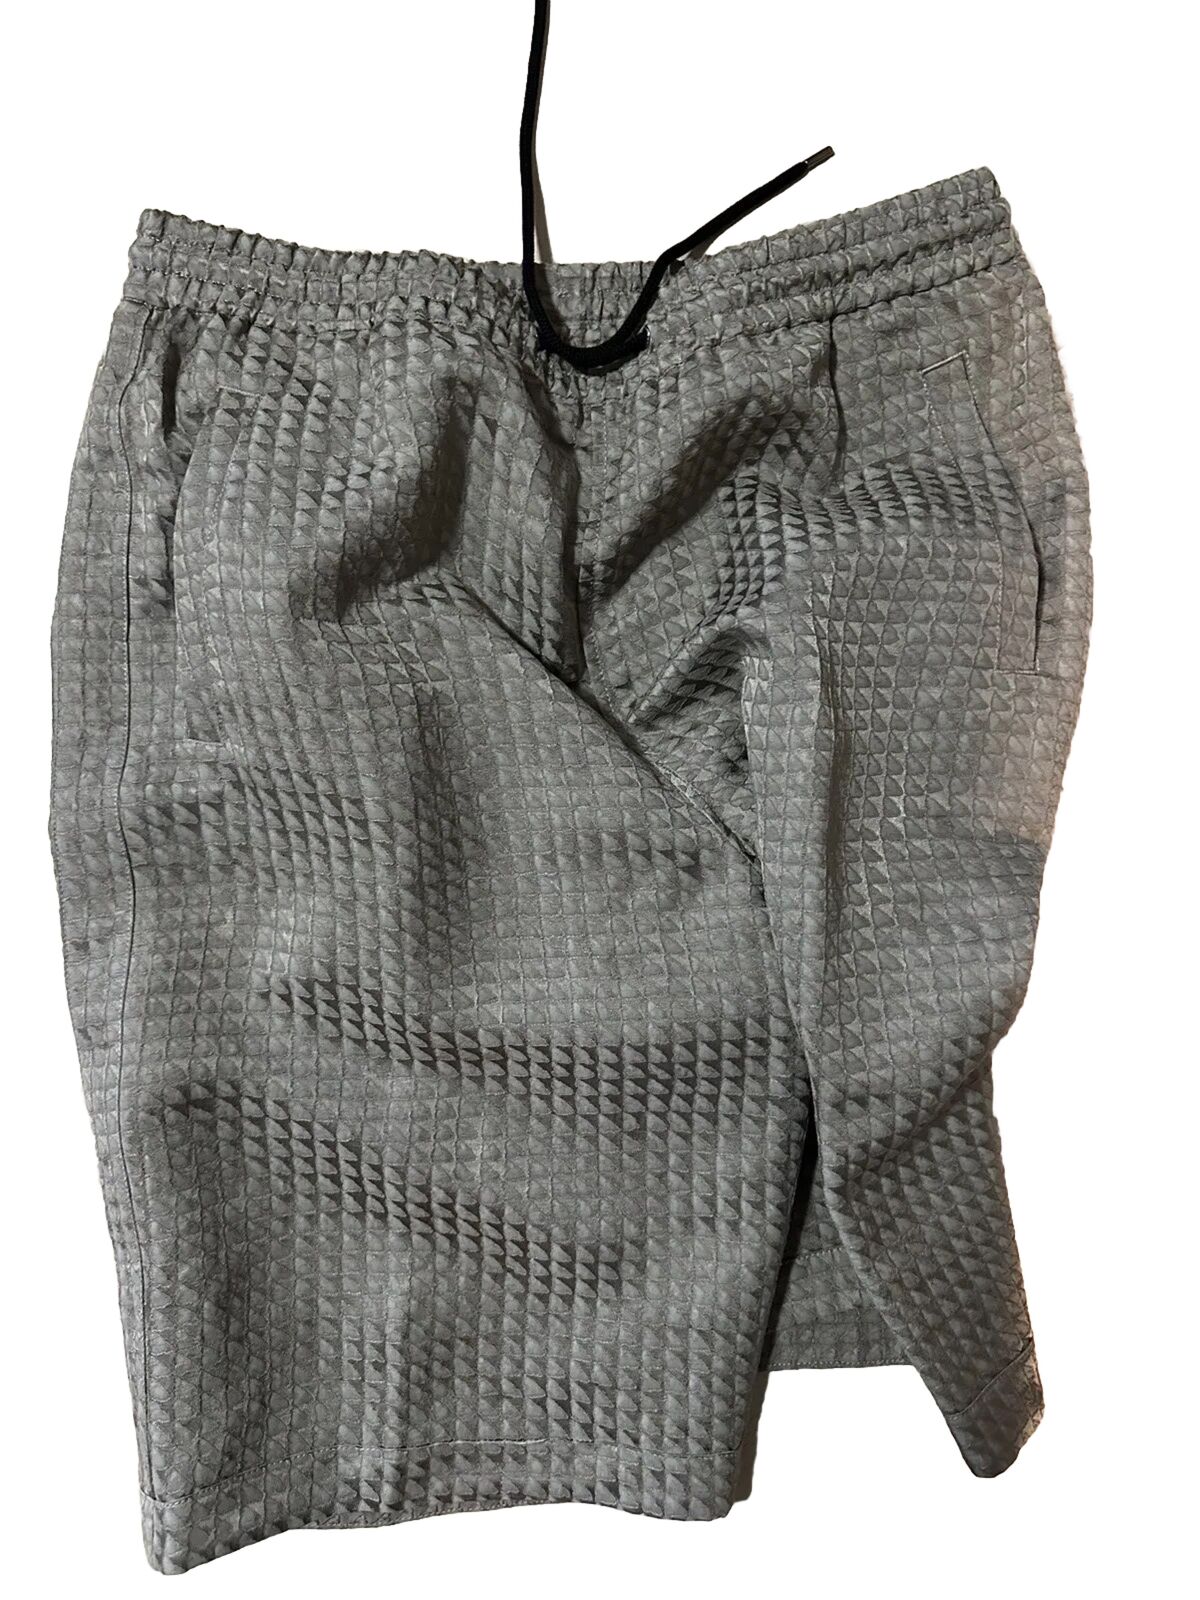 NWT $1295 Giorgio Armani Mens Drawstring Bermuda Shorts Pants Gray 34 US/50 Eu